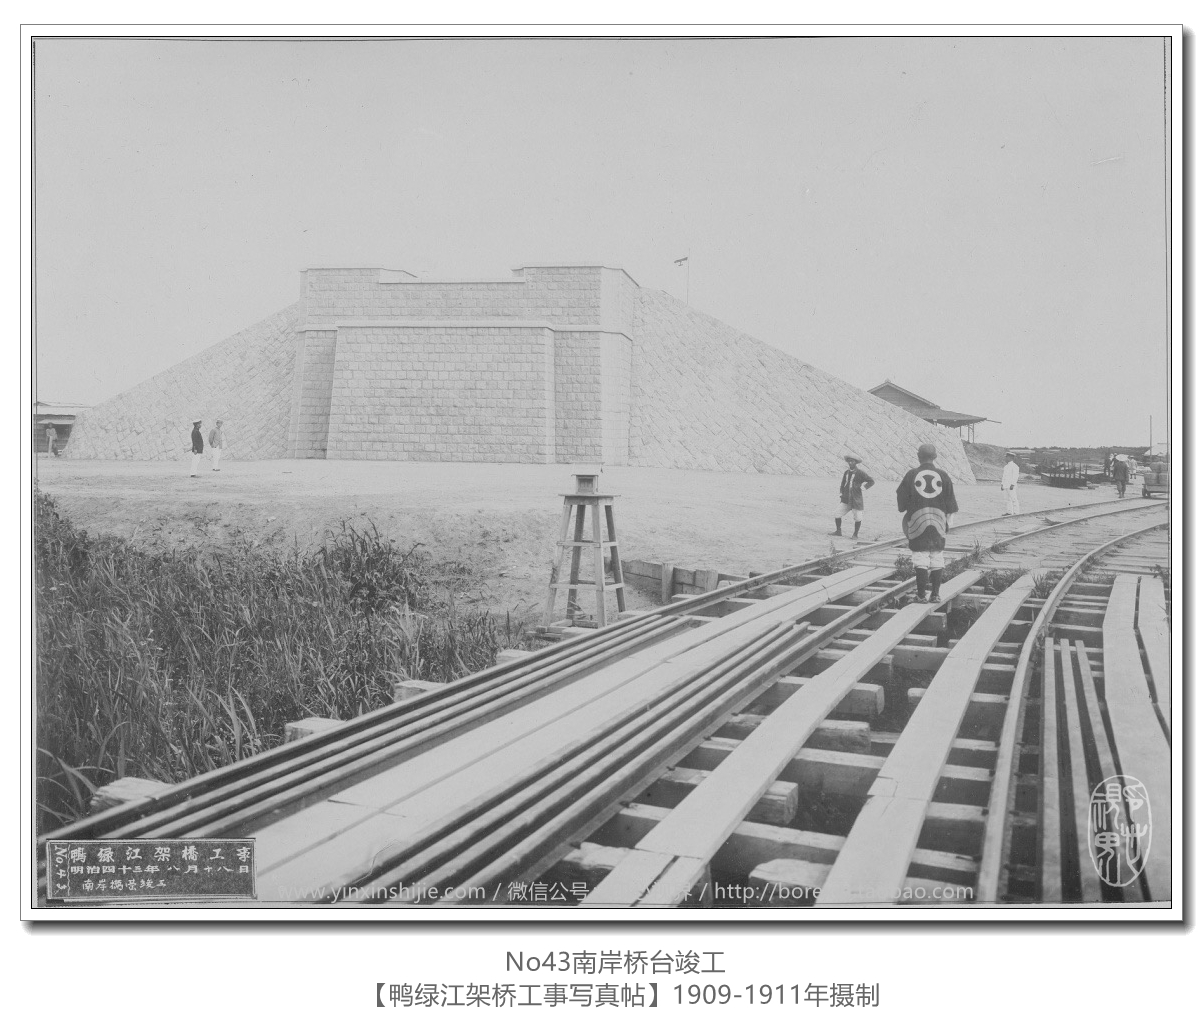 【万卷书】《鸭绿江架桥工事写真帖1911》No43南岸桥台竣工